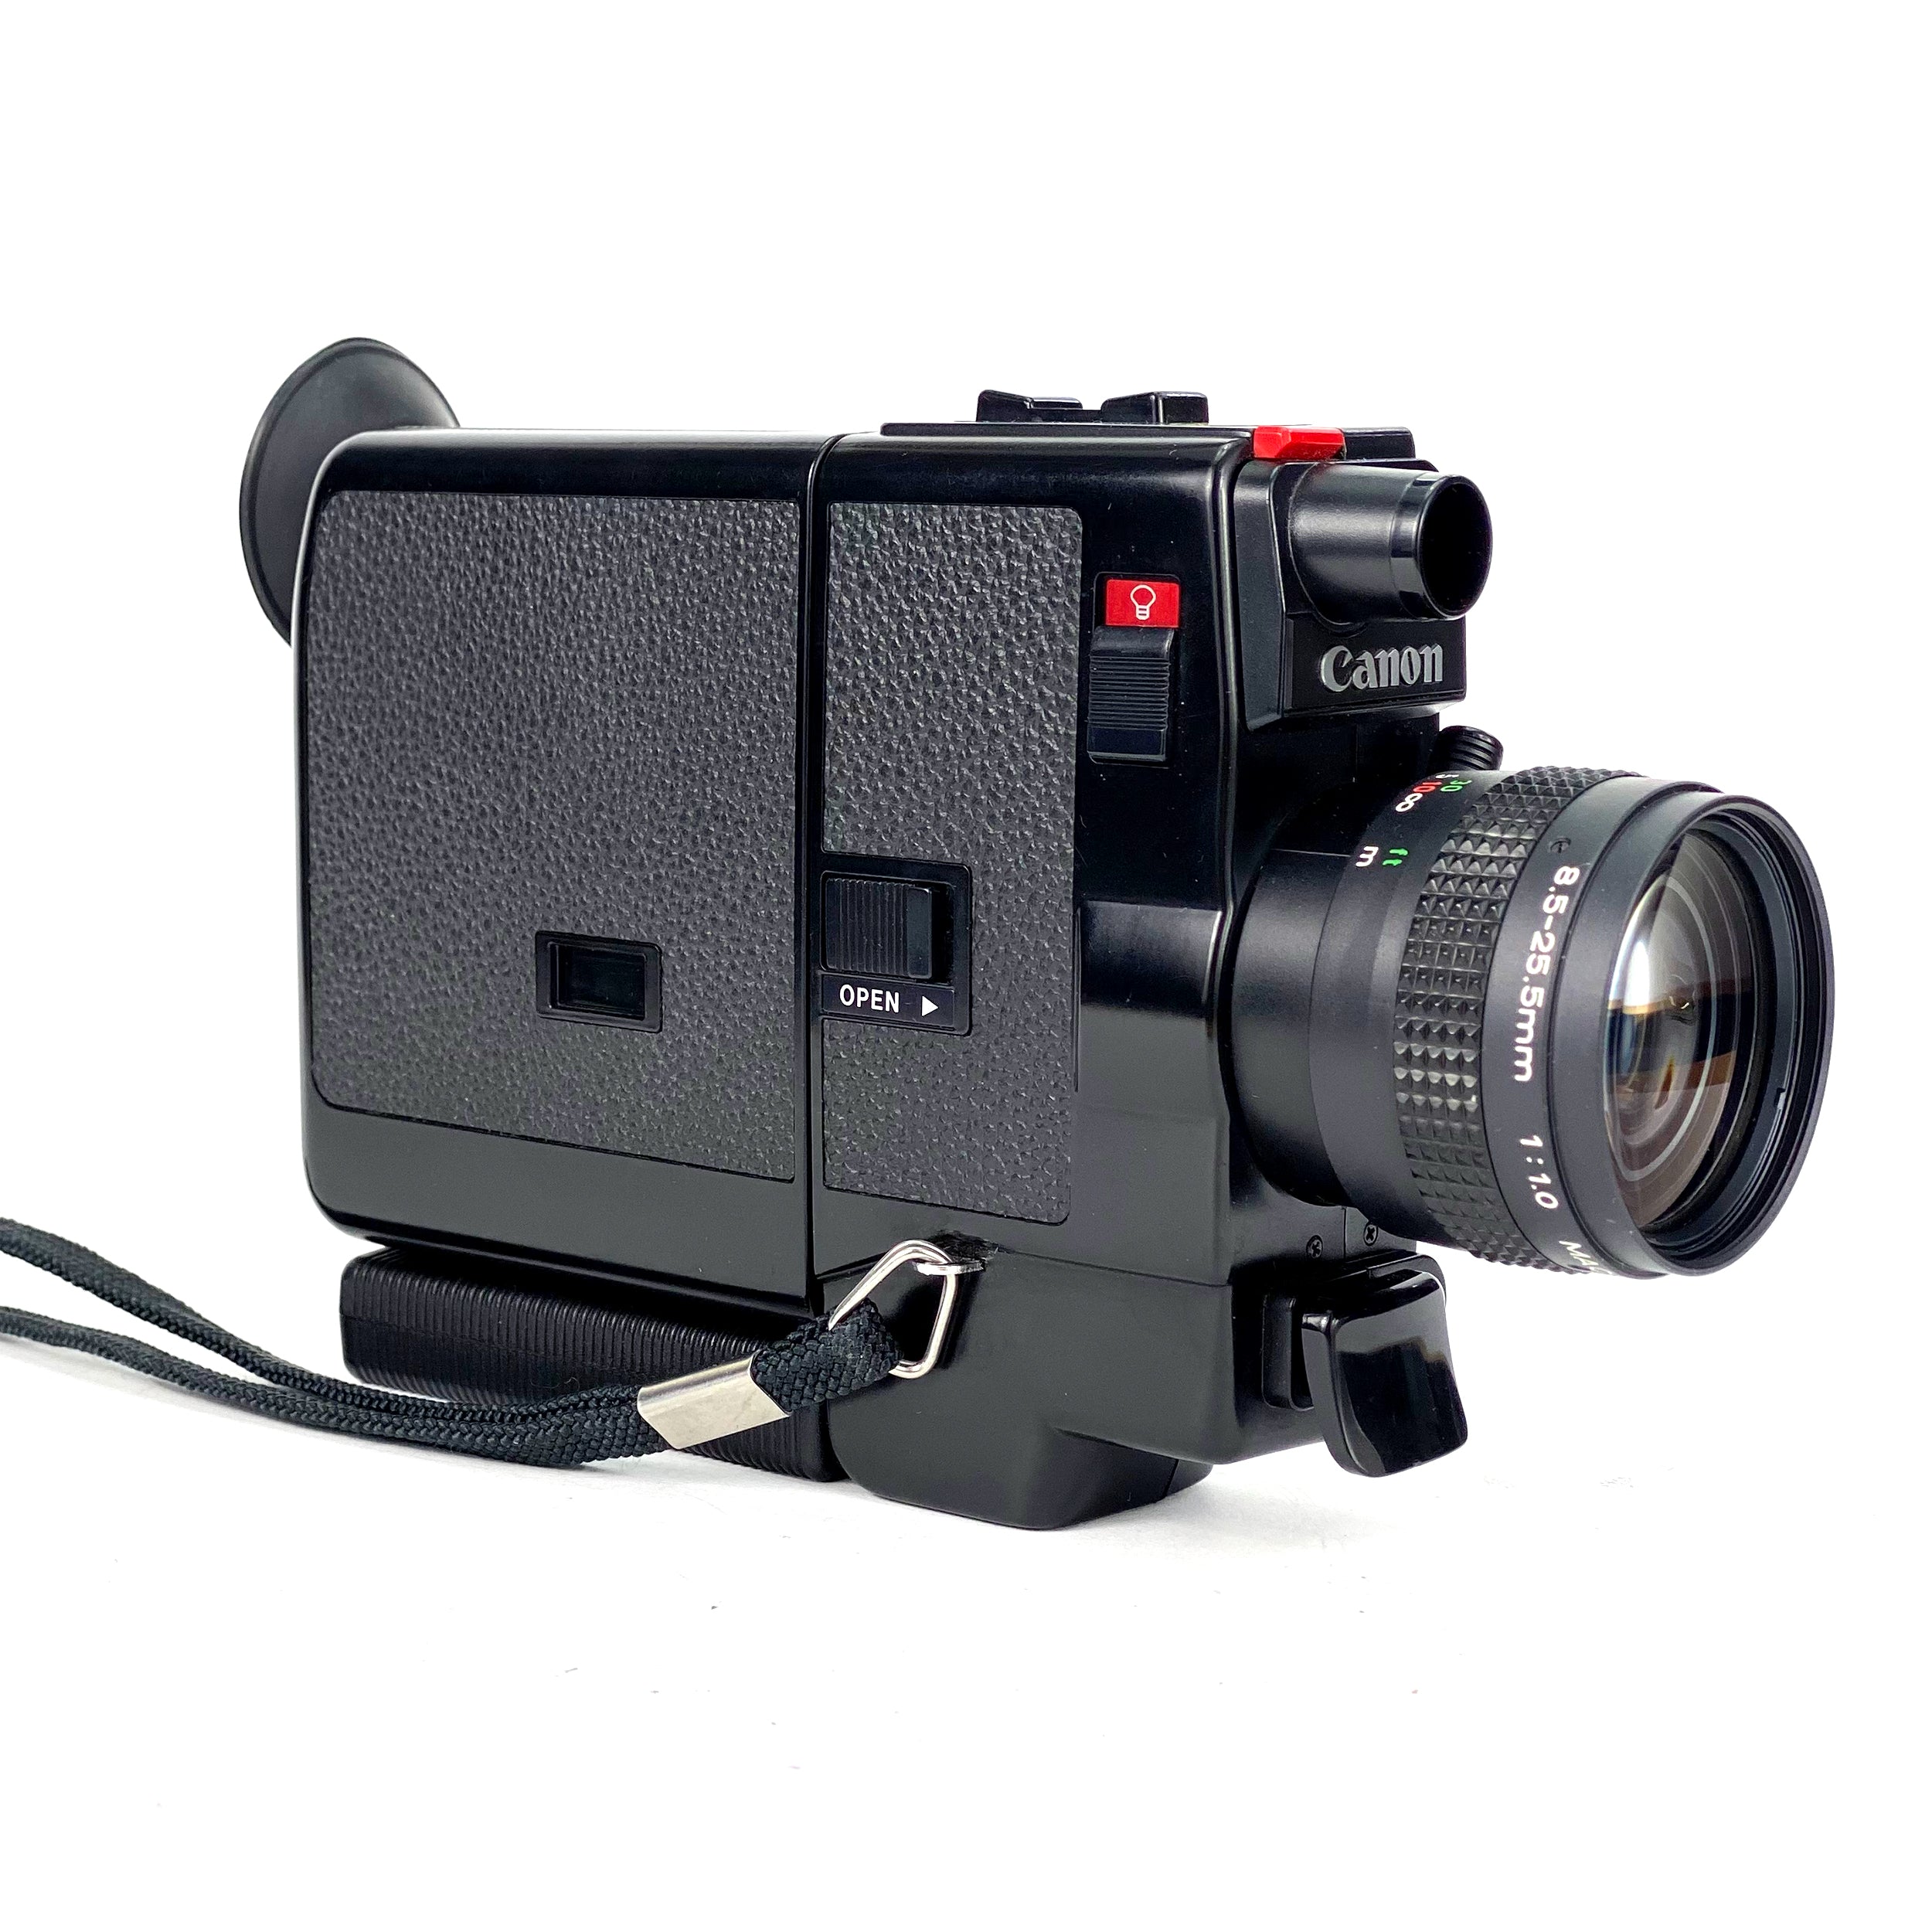 Canon 310XL Super 8 Cine Camera